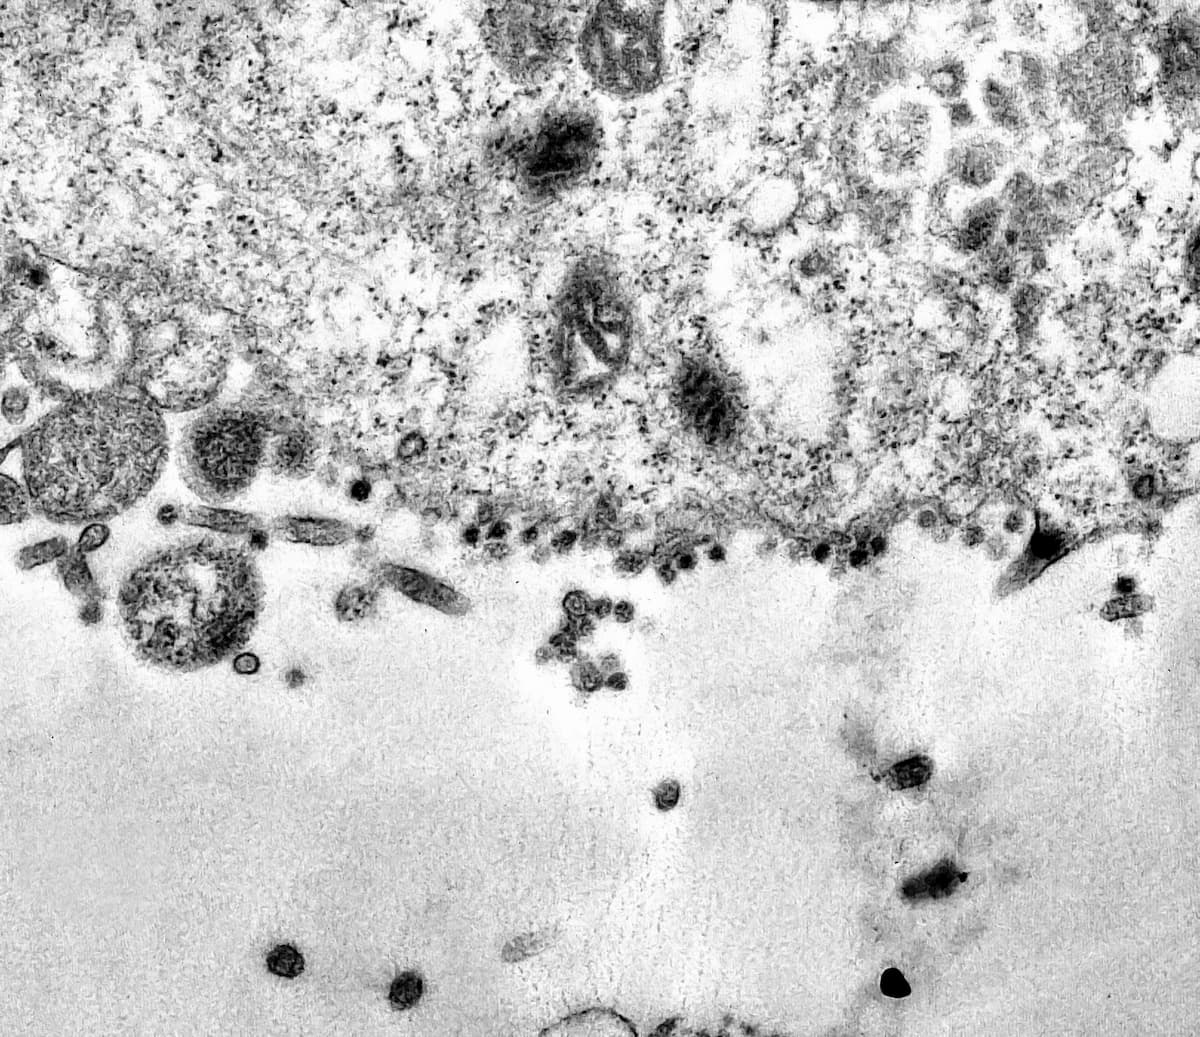 Coronavirus, fotografato il momento in cui il Covid-19 attacca le cellule